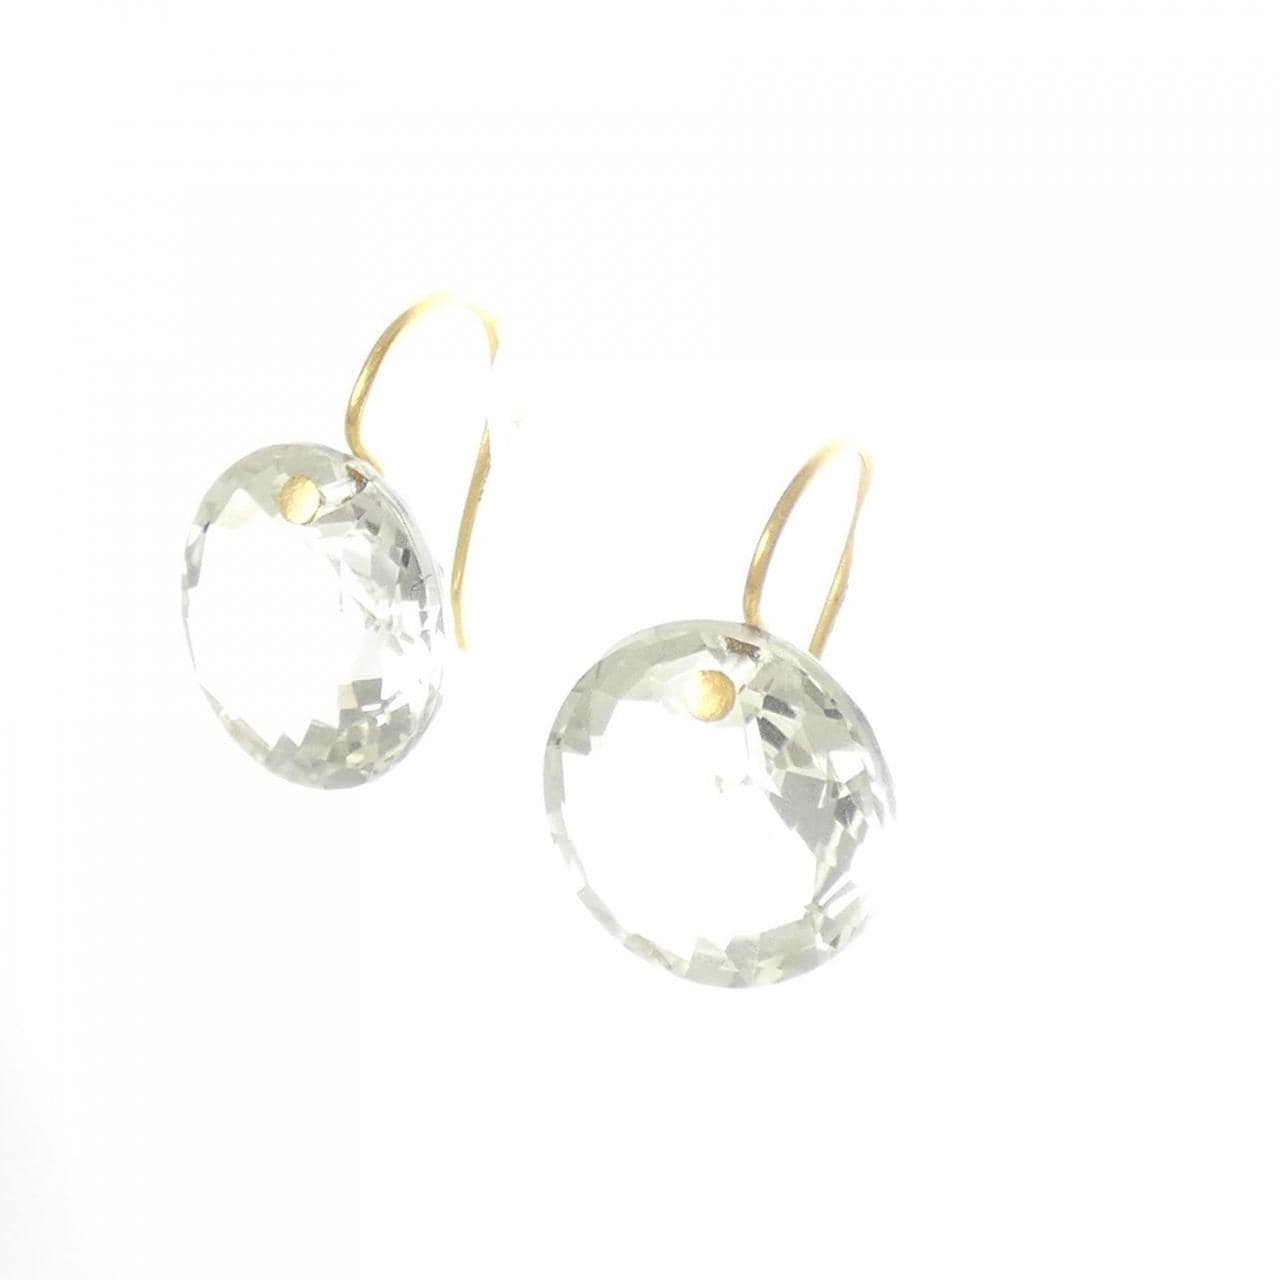 Marie-laine de Taillac Quartz earrings